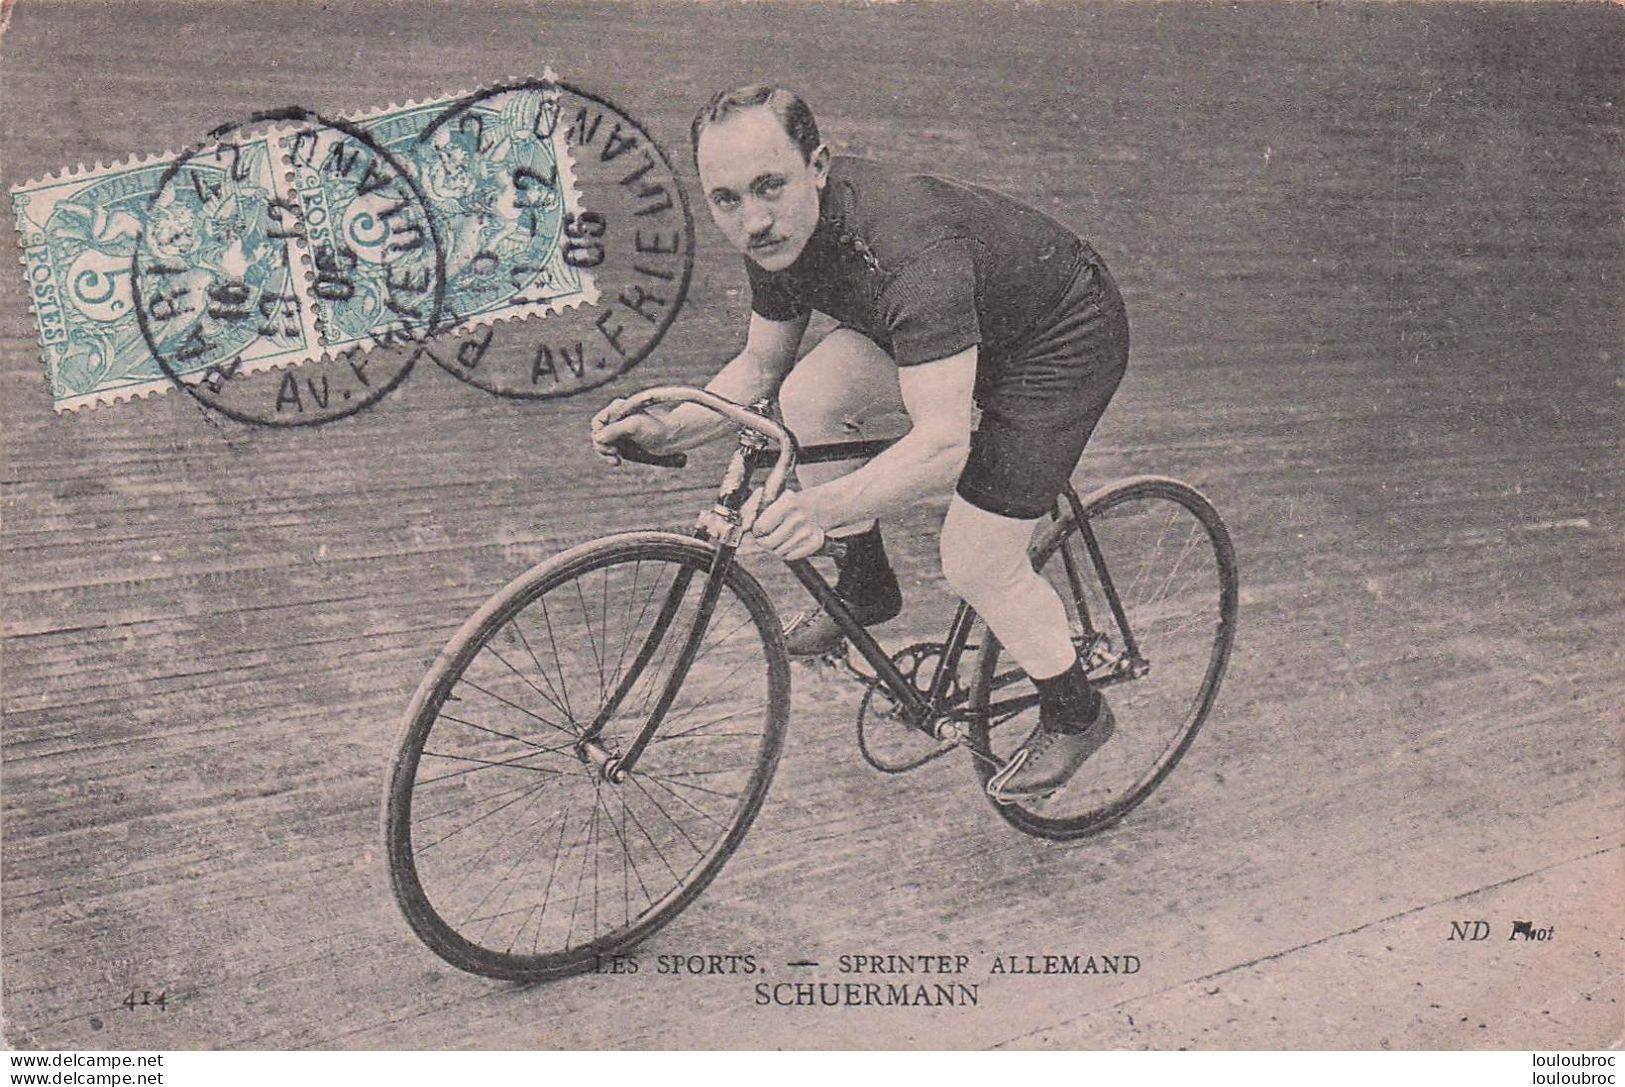 SCHEUERMANN SPRINTER ALLEMAND - Radsport